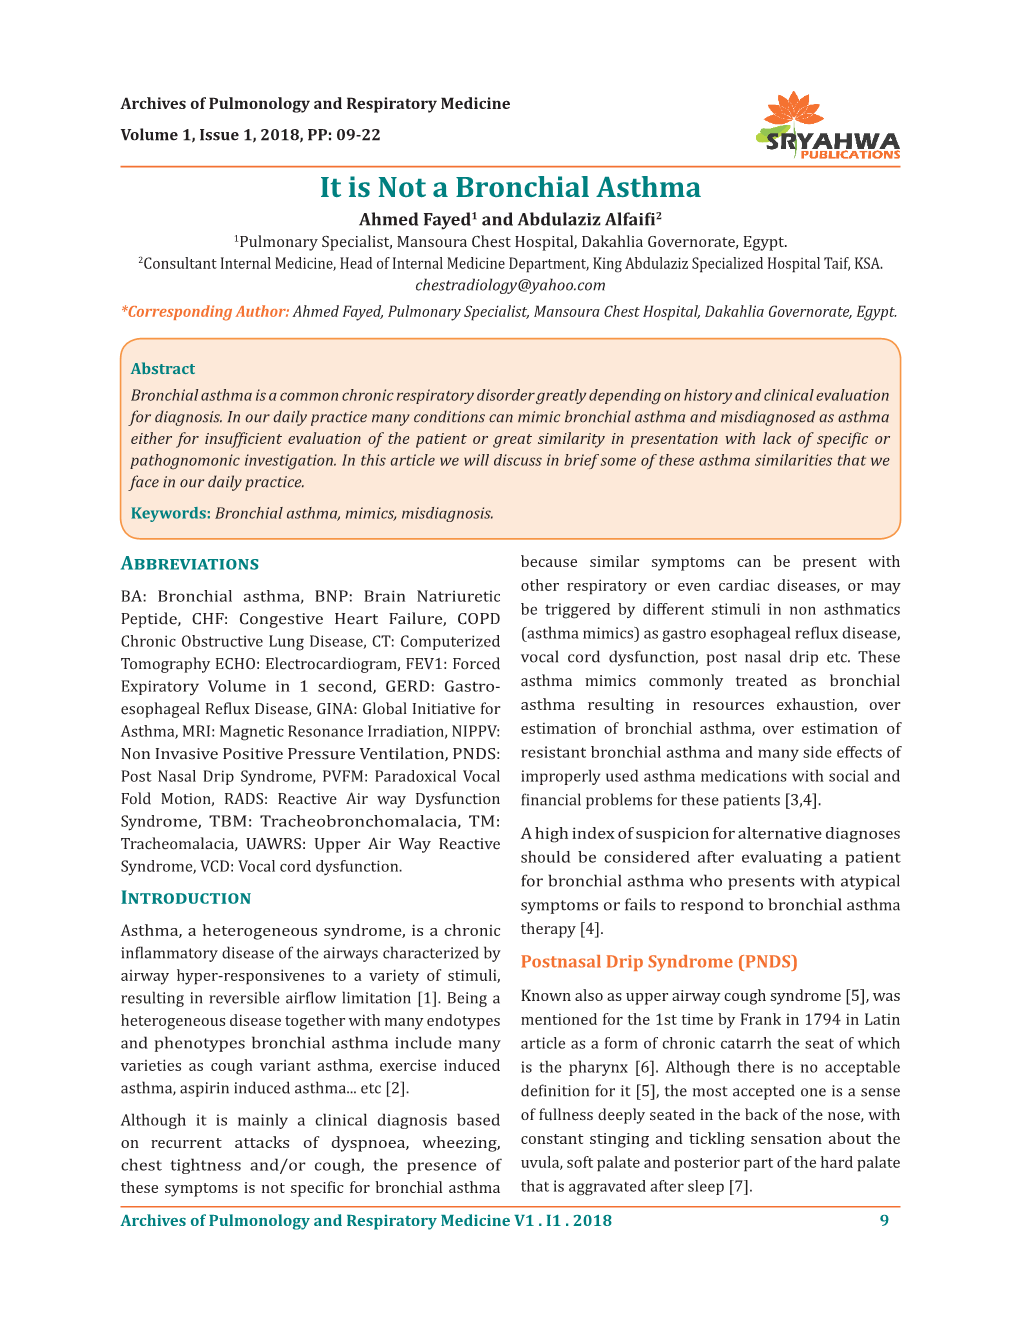 It Is Not a Bronchial Asthma